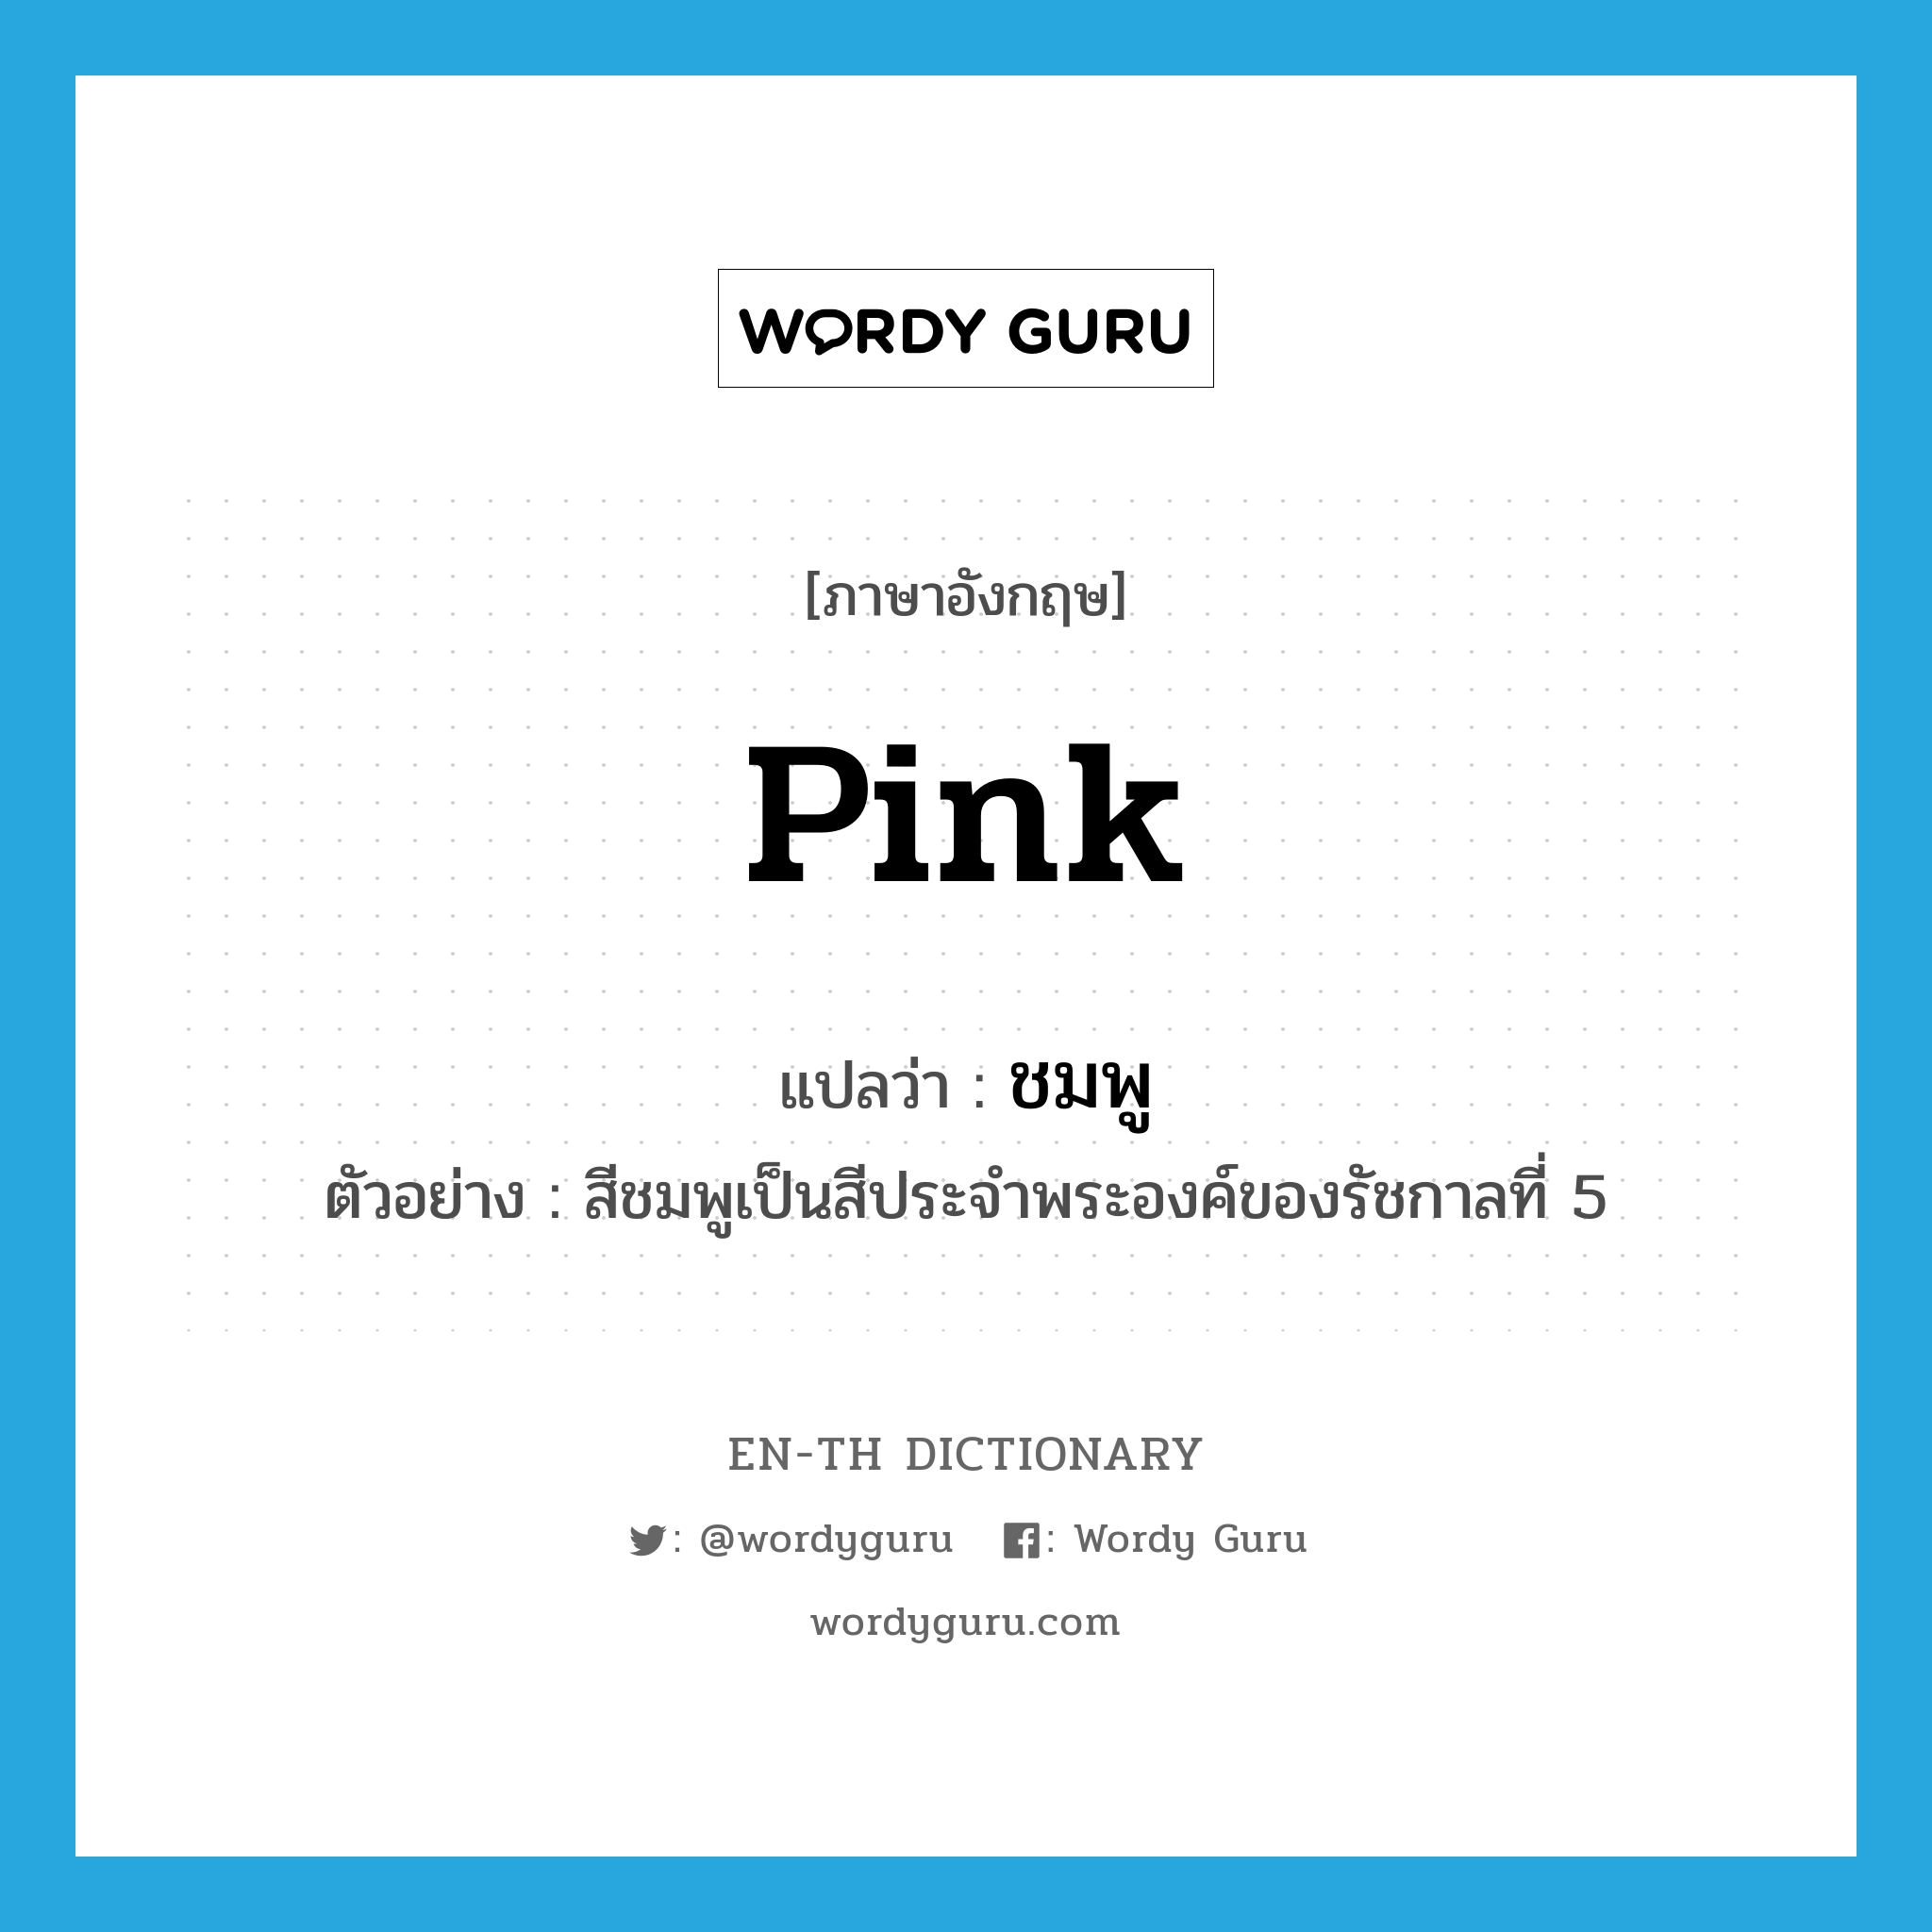 pink แปลว่า?, คำศัพท์ภาษาอังกฤษ pink แปลว่า ชมพู ประเภท N ตัวอย่าง สีชมพูเป็นสีประจำพระองค์ของรัชกาลที่ 5 หมวด N